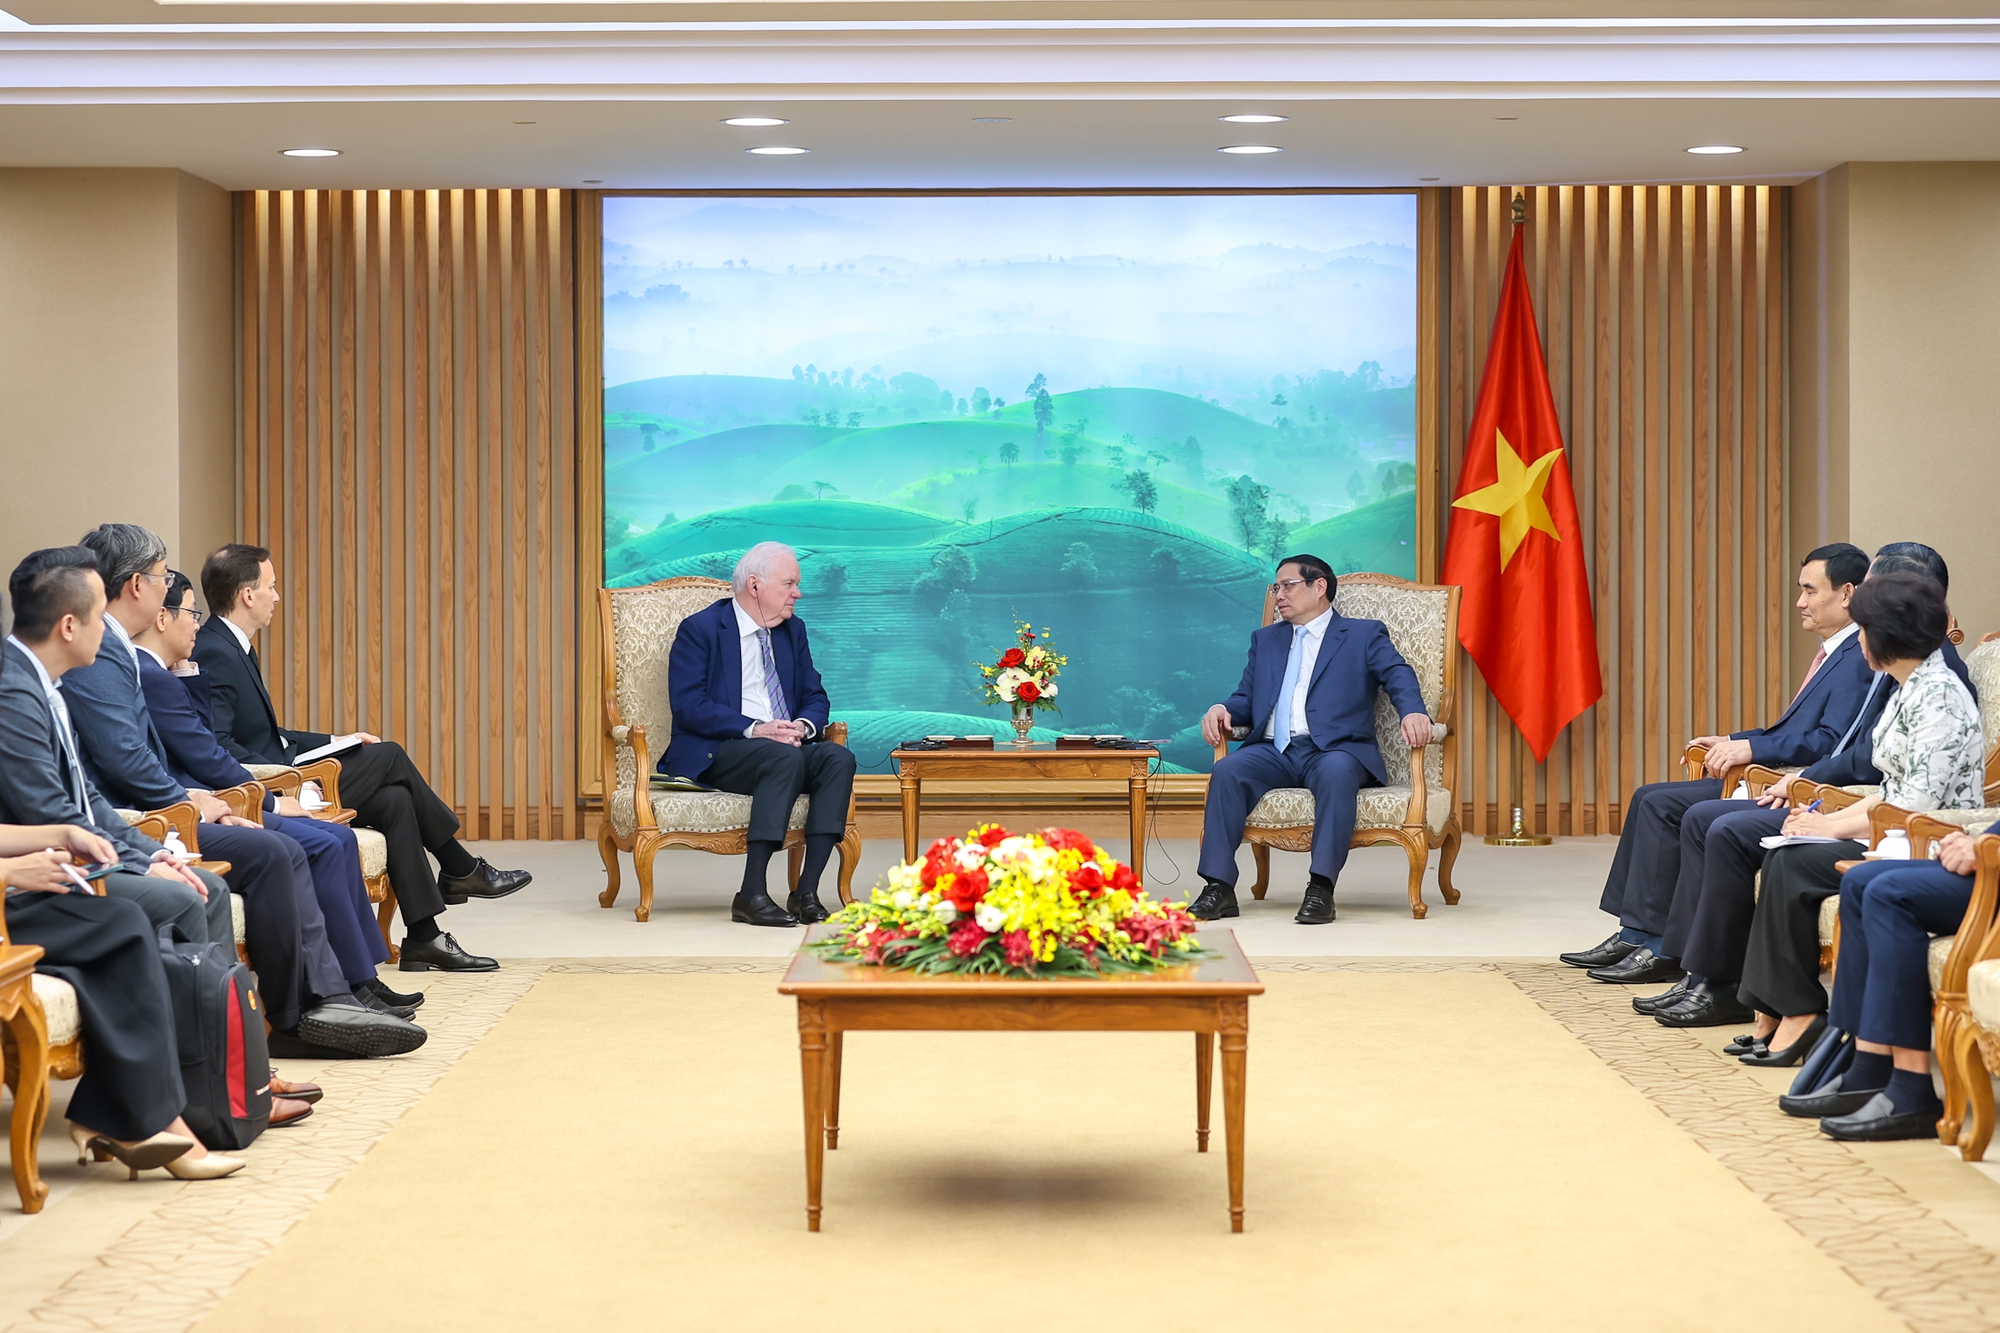 Ông Thomas Vallely khẳng định sẽ phối hợp chặt chẽ với với các cơ quan Chính phủ Việt Nam tổ chức Chương trình VELP năm 2024 thiết thực, hiệu quả với các nội dung gắn liền với các ưu tiên phát triển kinh tế-xã hội của Việt Nam theo gợi ý của Thủ tướng Phạm Minh Chính - Ảnh: VGP/Nhật Bắc